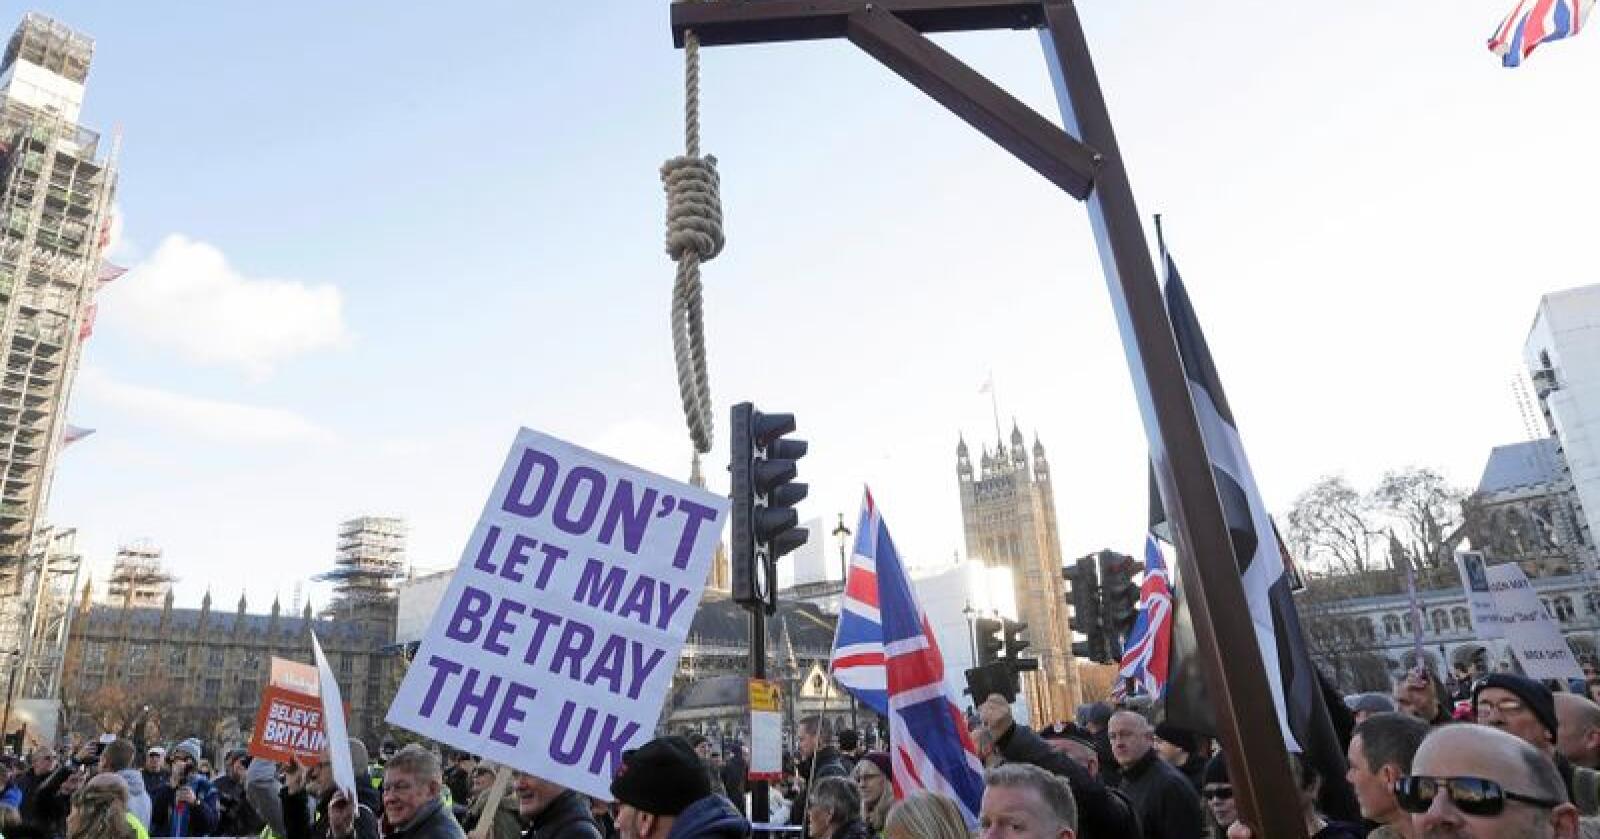 Krigsretorikk: En ytterliggående brexit-tilhenger stilte med en galge tilegnet statsminister Theresa May under en demonstrasjon i London i helgen. Foto: Tim Ireland / AP / NTB Scanpix